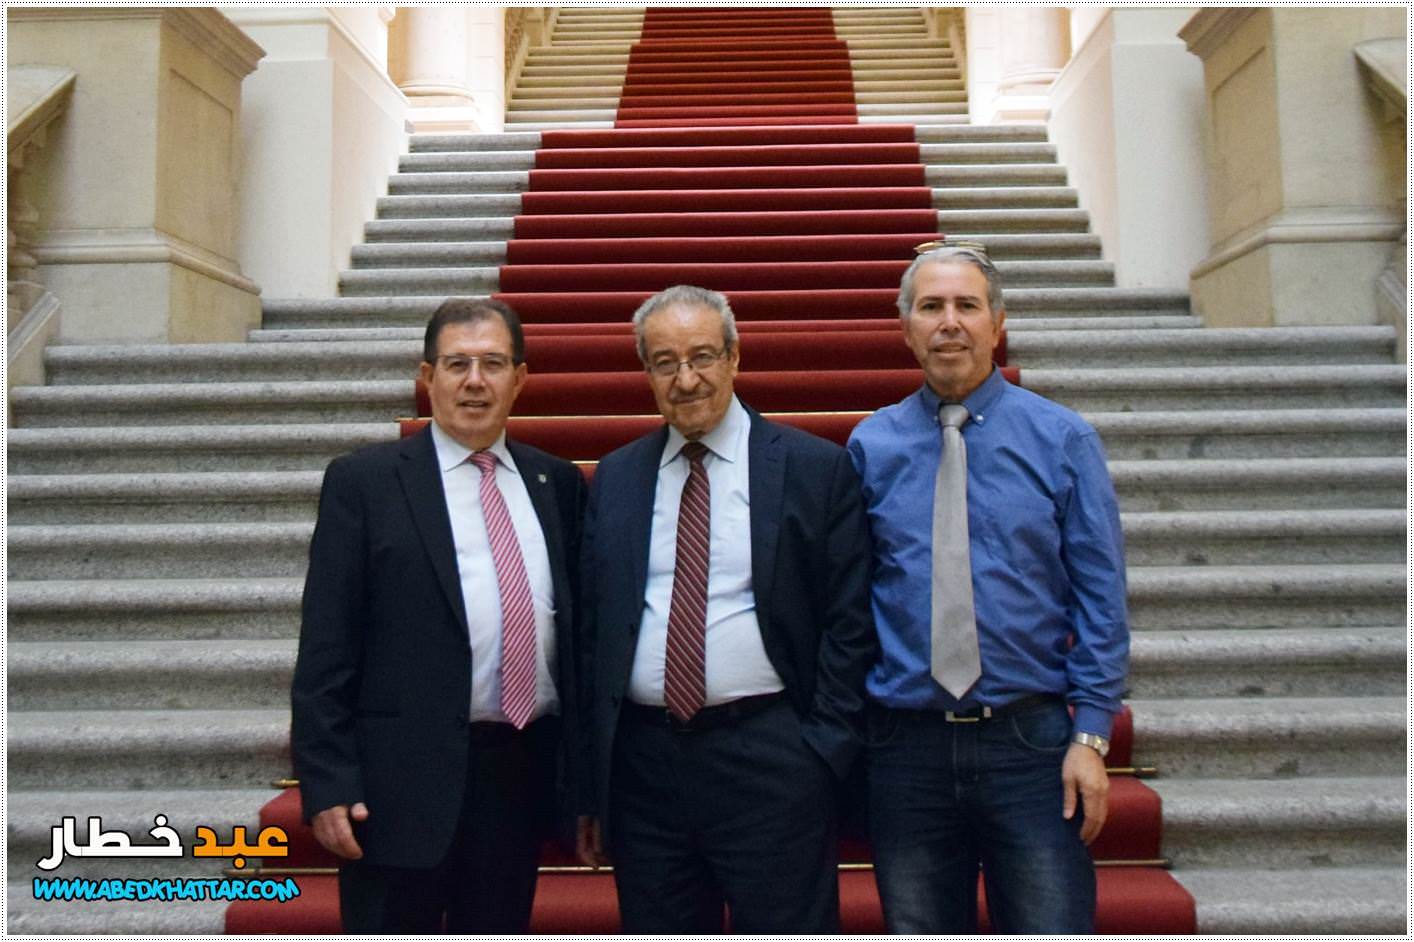 رائد صالح زعيم الكتلة البرلمانية SPD  في مجلس النواب يستقبل تيسير خالد عضو اللجنة التنفيذية لمنظمة التحرير الفلسطينية